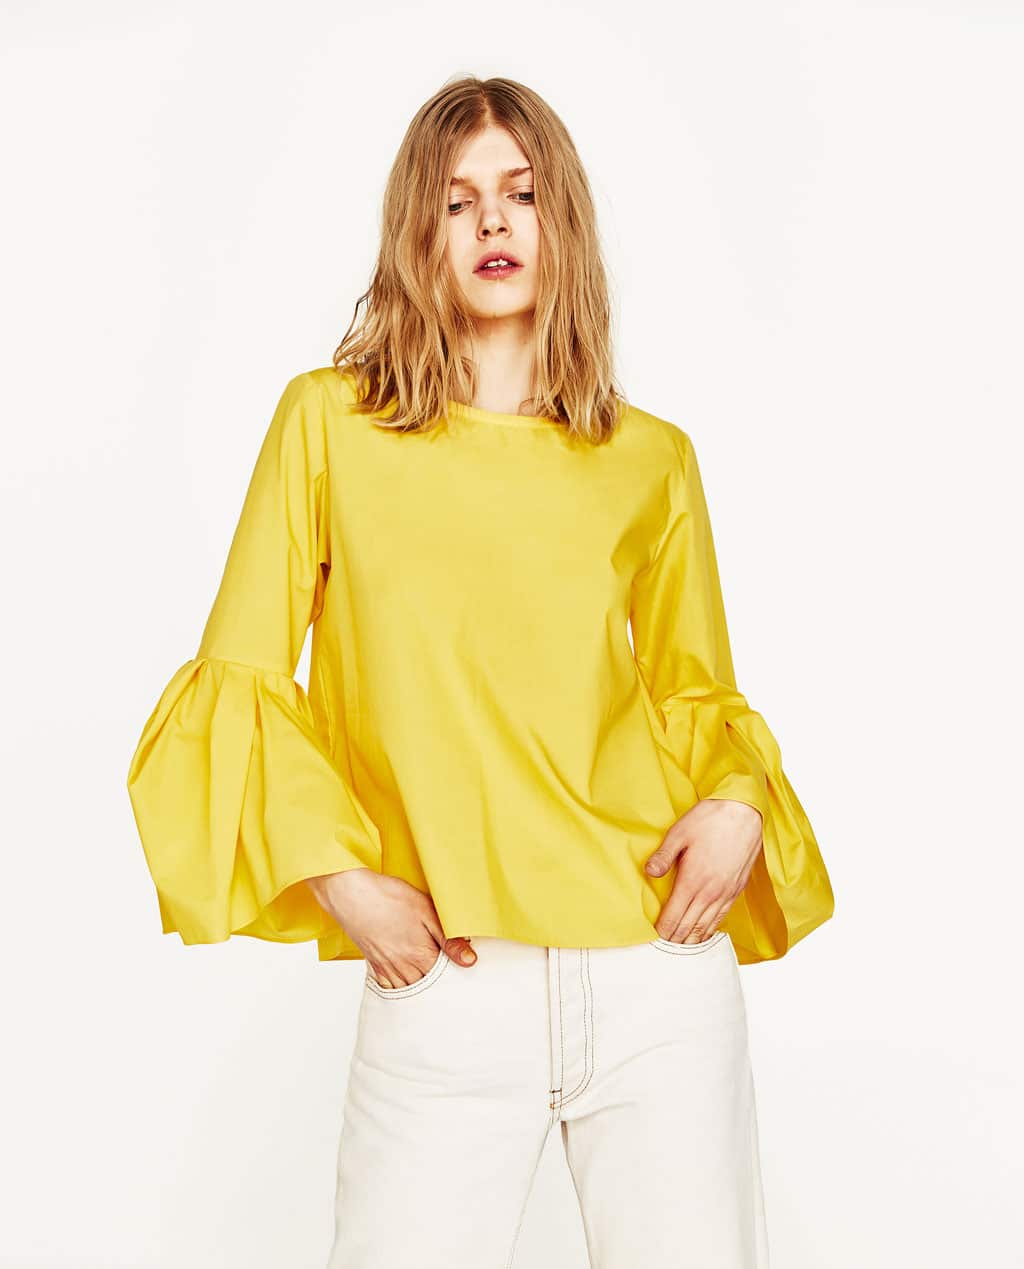 The Fashion Magpie Zara Yellow Top 4